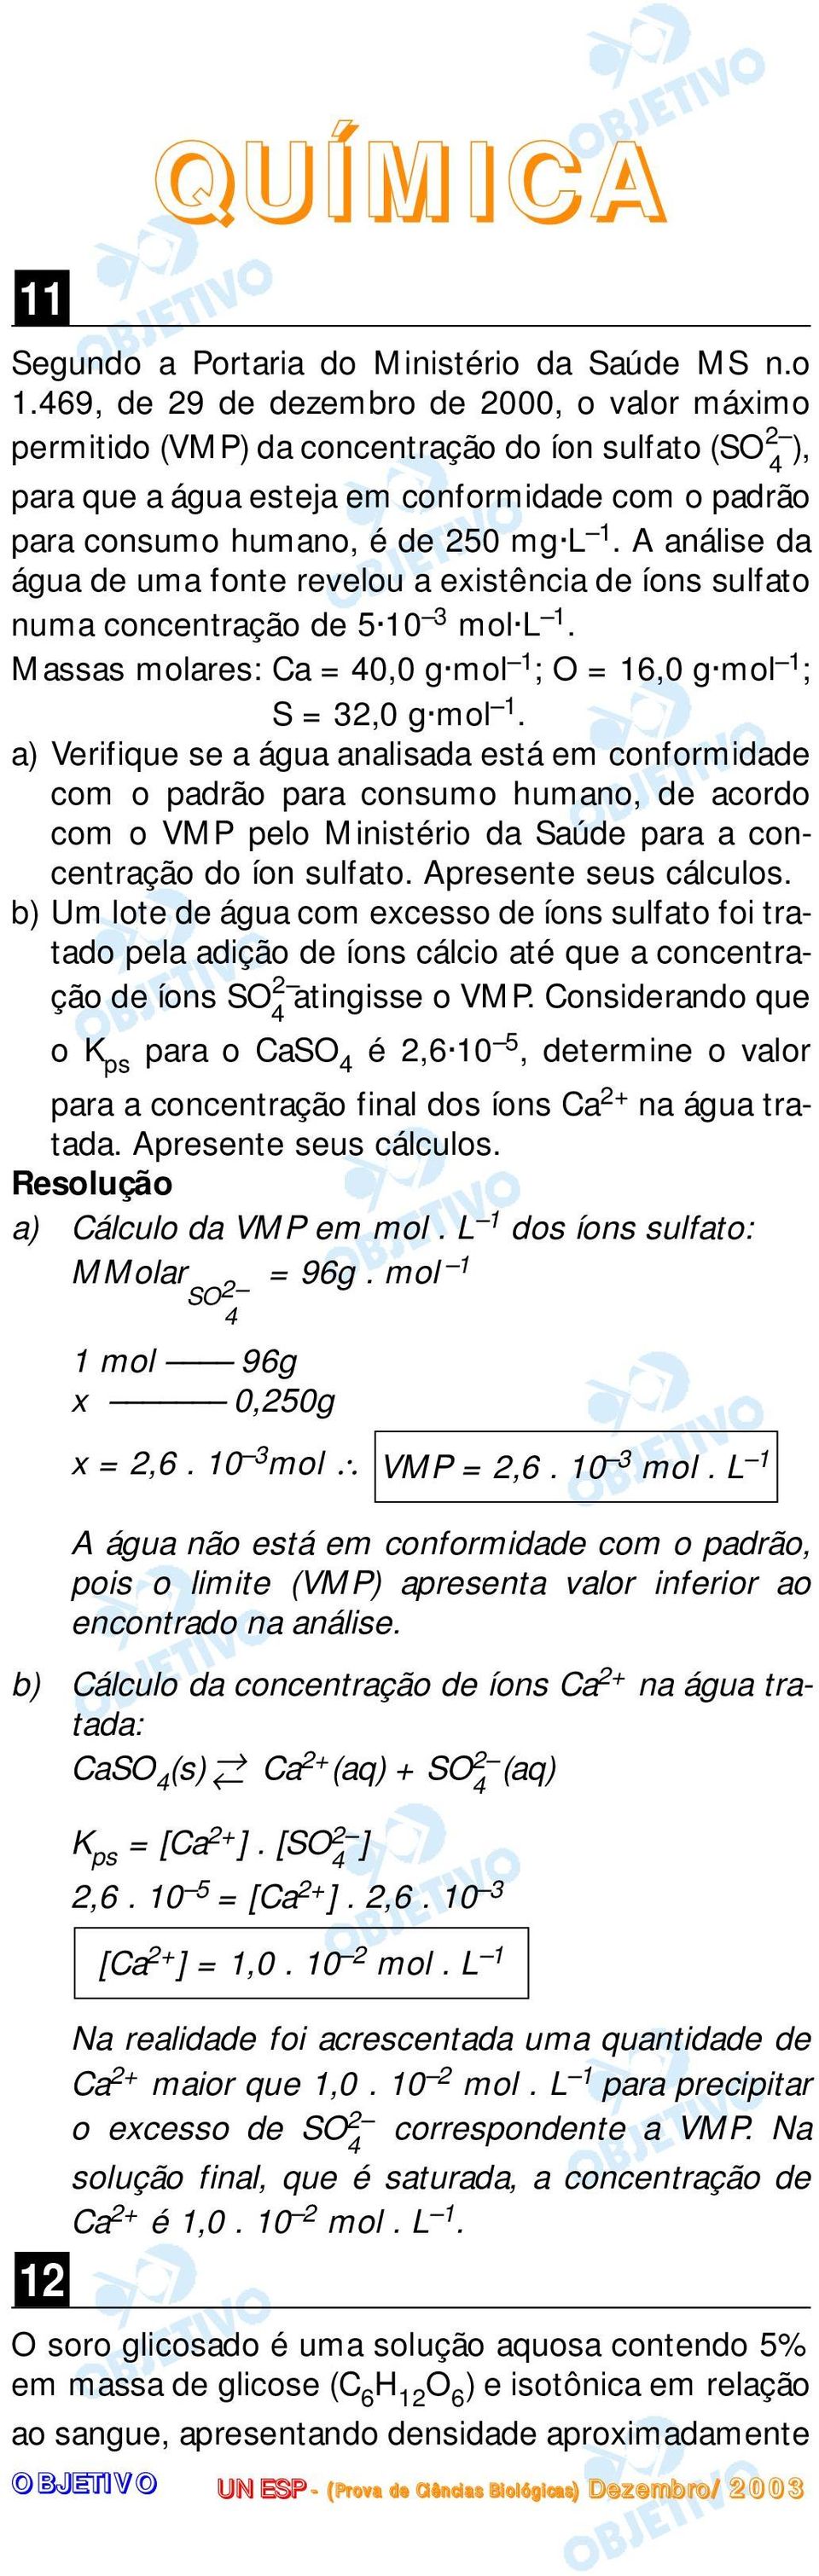 A análise da água de uma fonte revelou a existência de íons sulfato numa concentração de 5 10 3 mol L 1. Massas molares: Ca = 40,0 g mol 1 ; O = 16,0 g mol 1 ; S = 32,0 g mol 1.